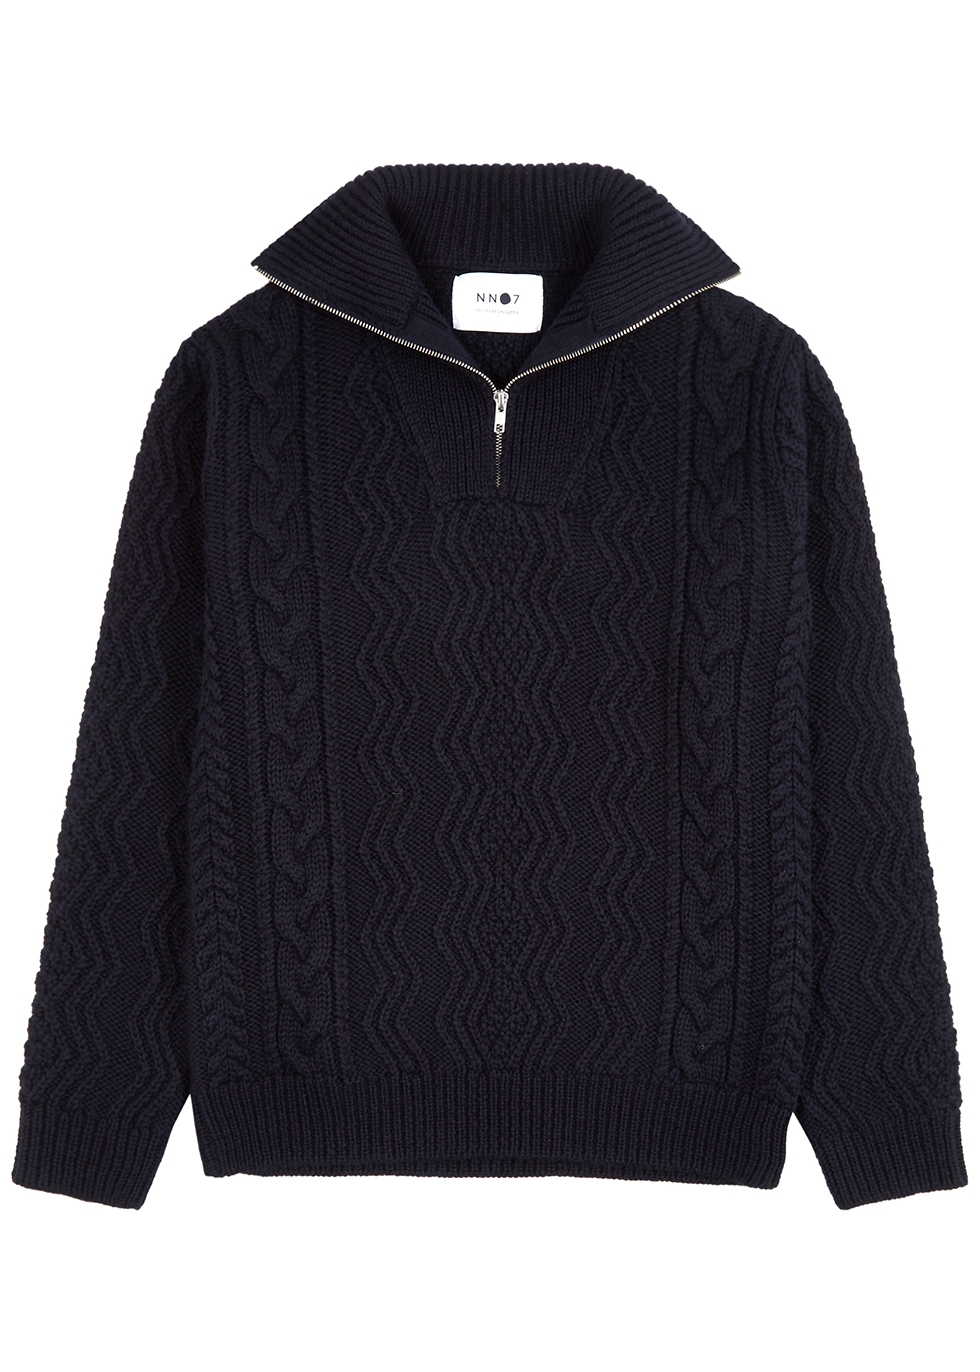 Roman navy half-zip wool jumper